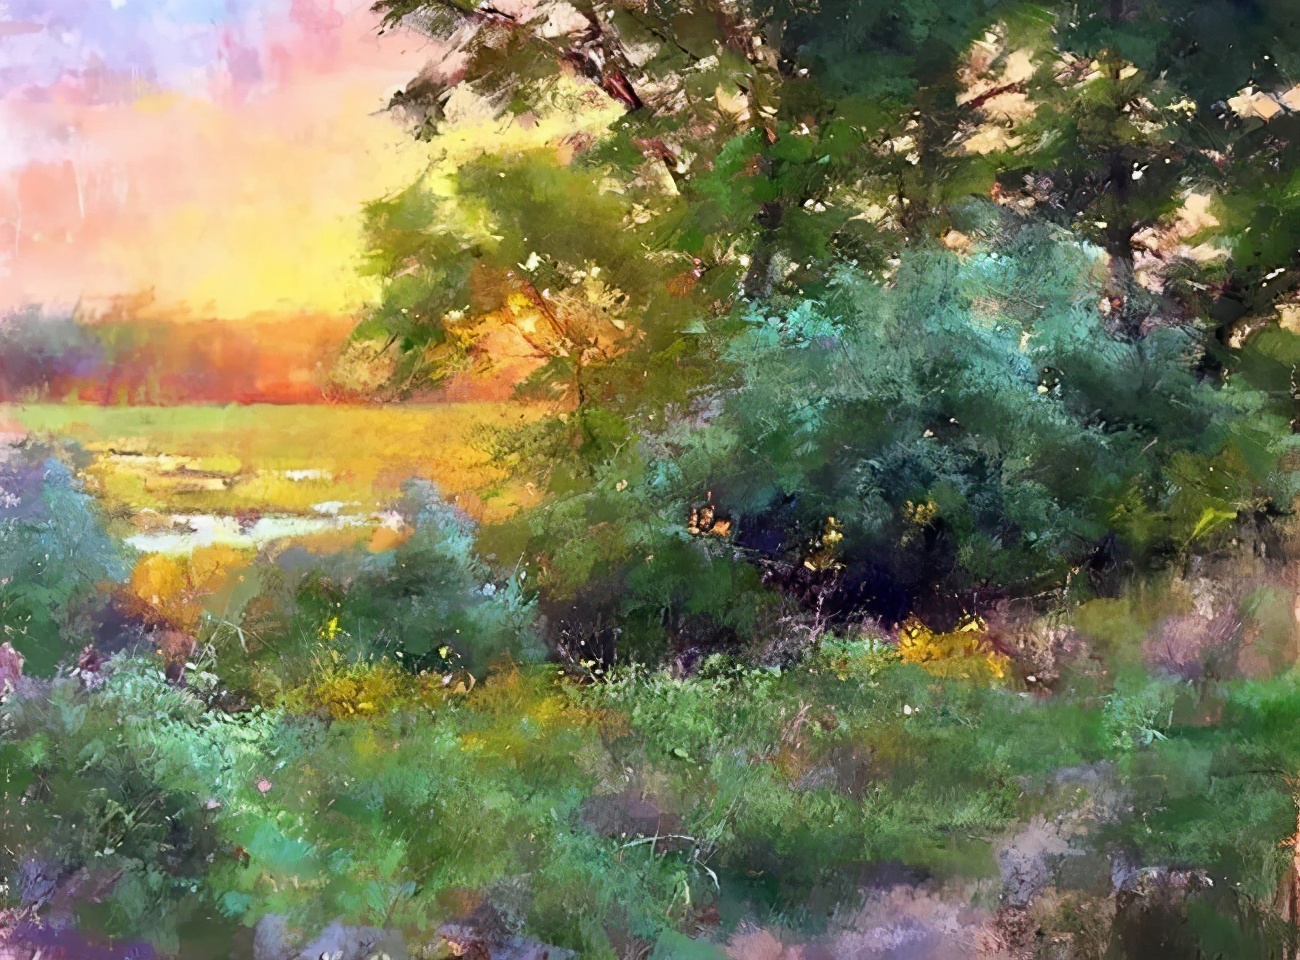 美国艺术家阿奎尔 柔和的风景油画,温馨美好!_手机搜狐网